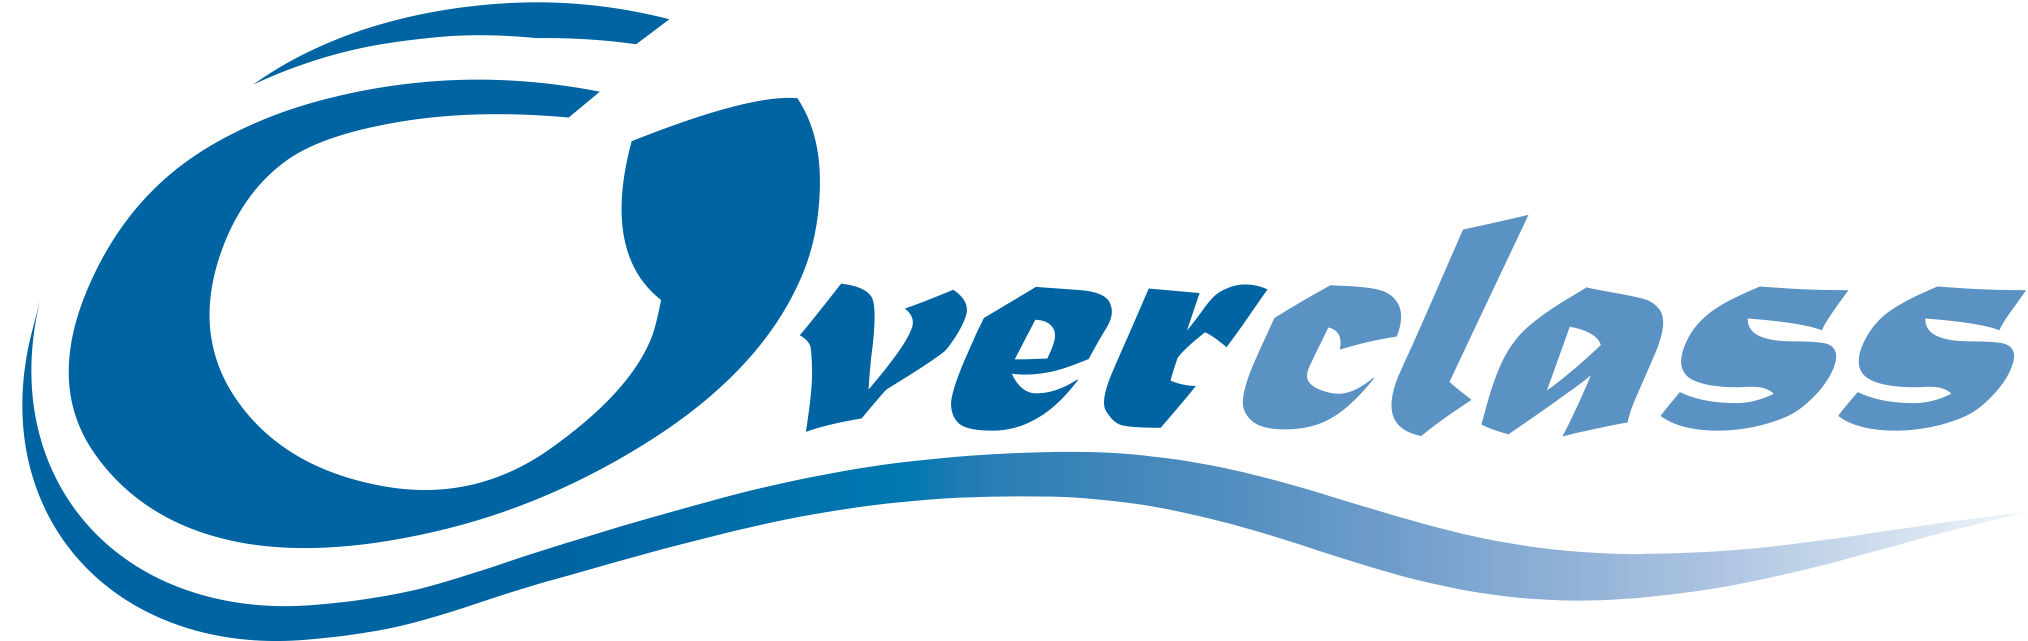 OVERCLASS logo